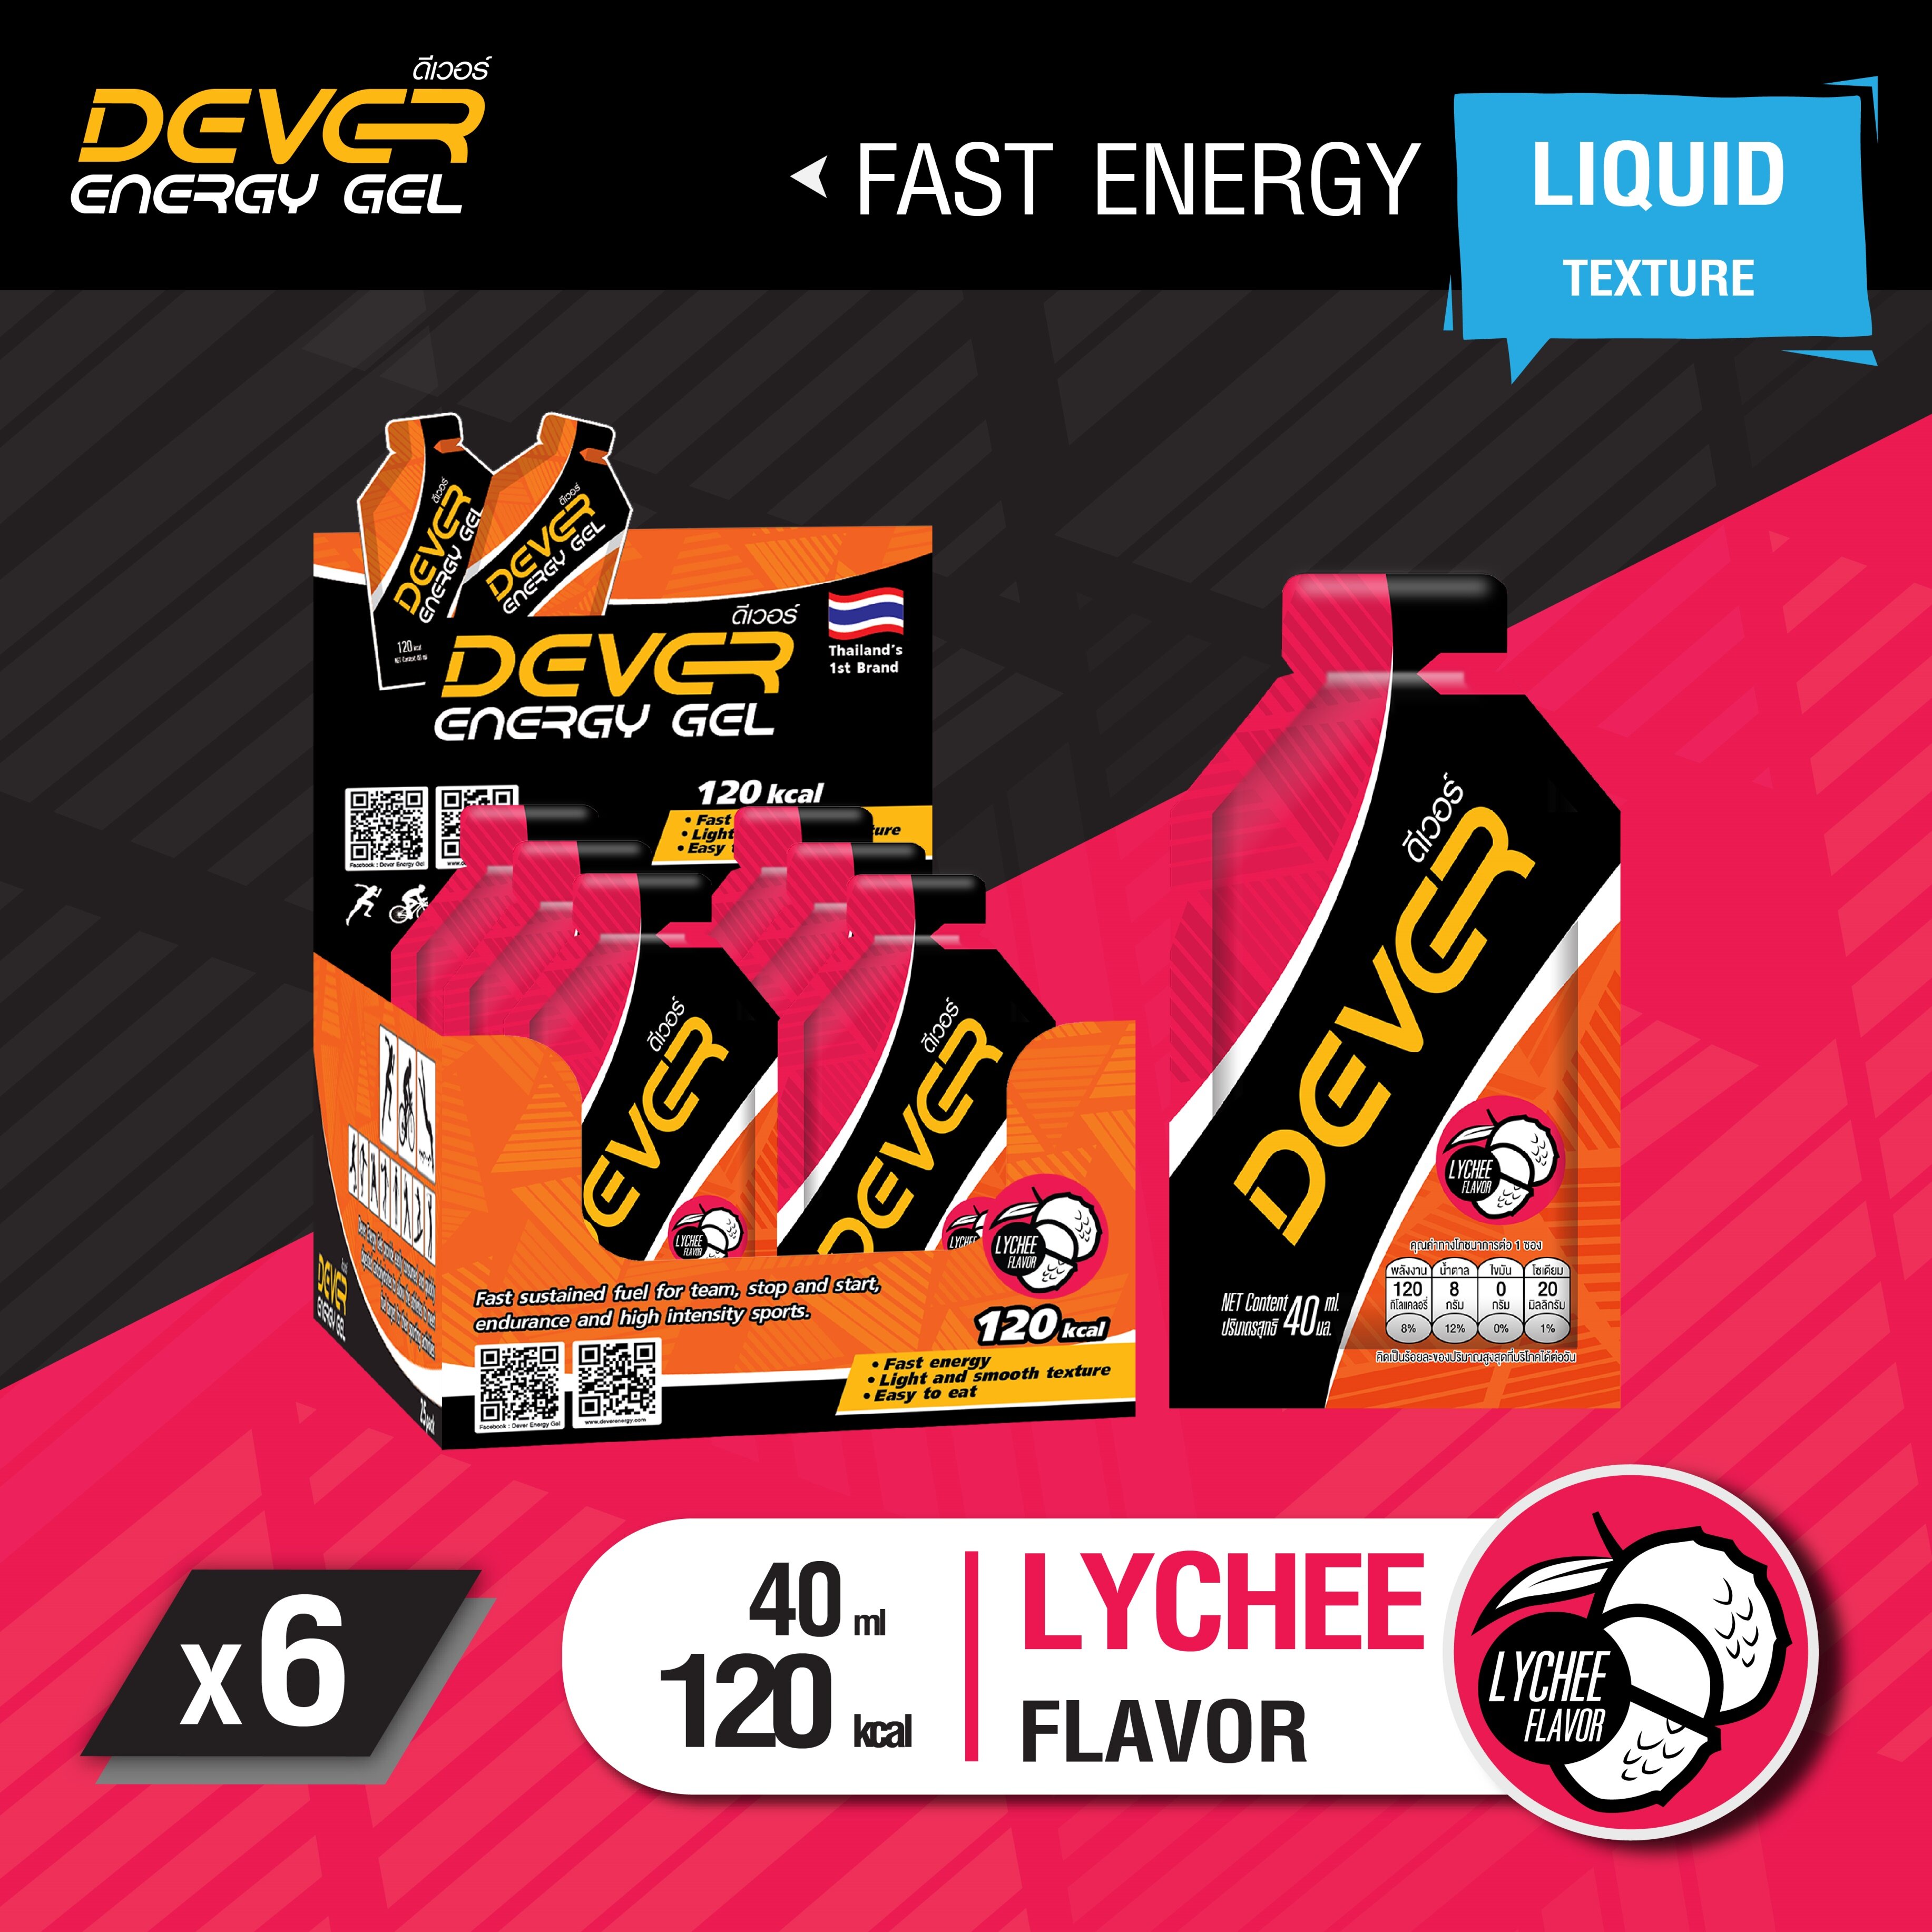 DEVER gel (vital energy) เกลือแร่ สำหรับนักวิ่ง นักกีฬา เจลให้พลังงาน เจลพลังงาน เจลนักวิ่ง เจลวิ่ง เครื่องดื่มให้พลังงาน > 40 ML ลิ้นจี่ 6 ซอง